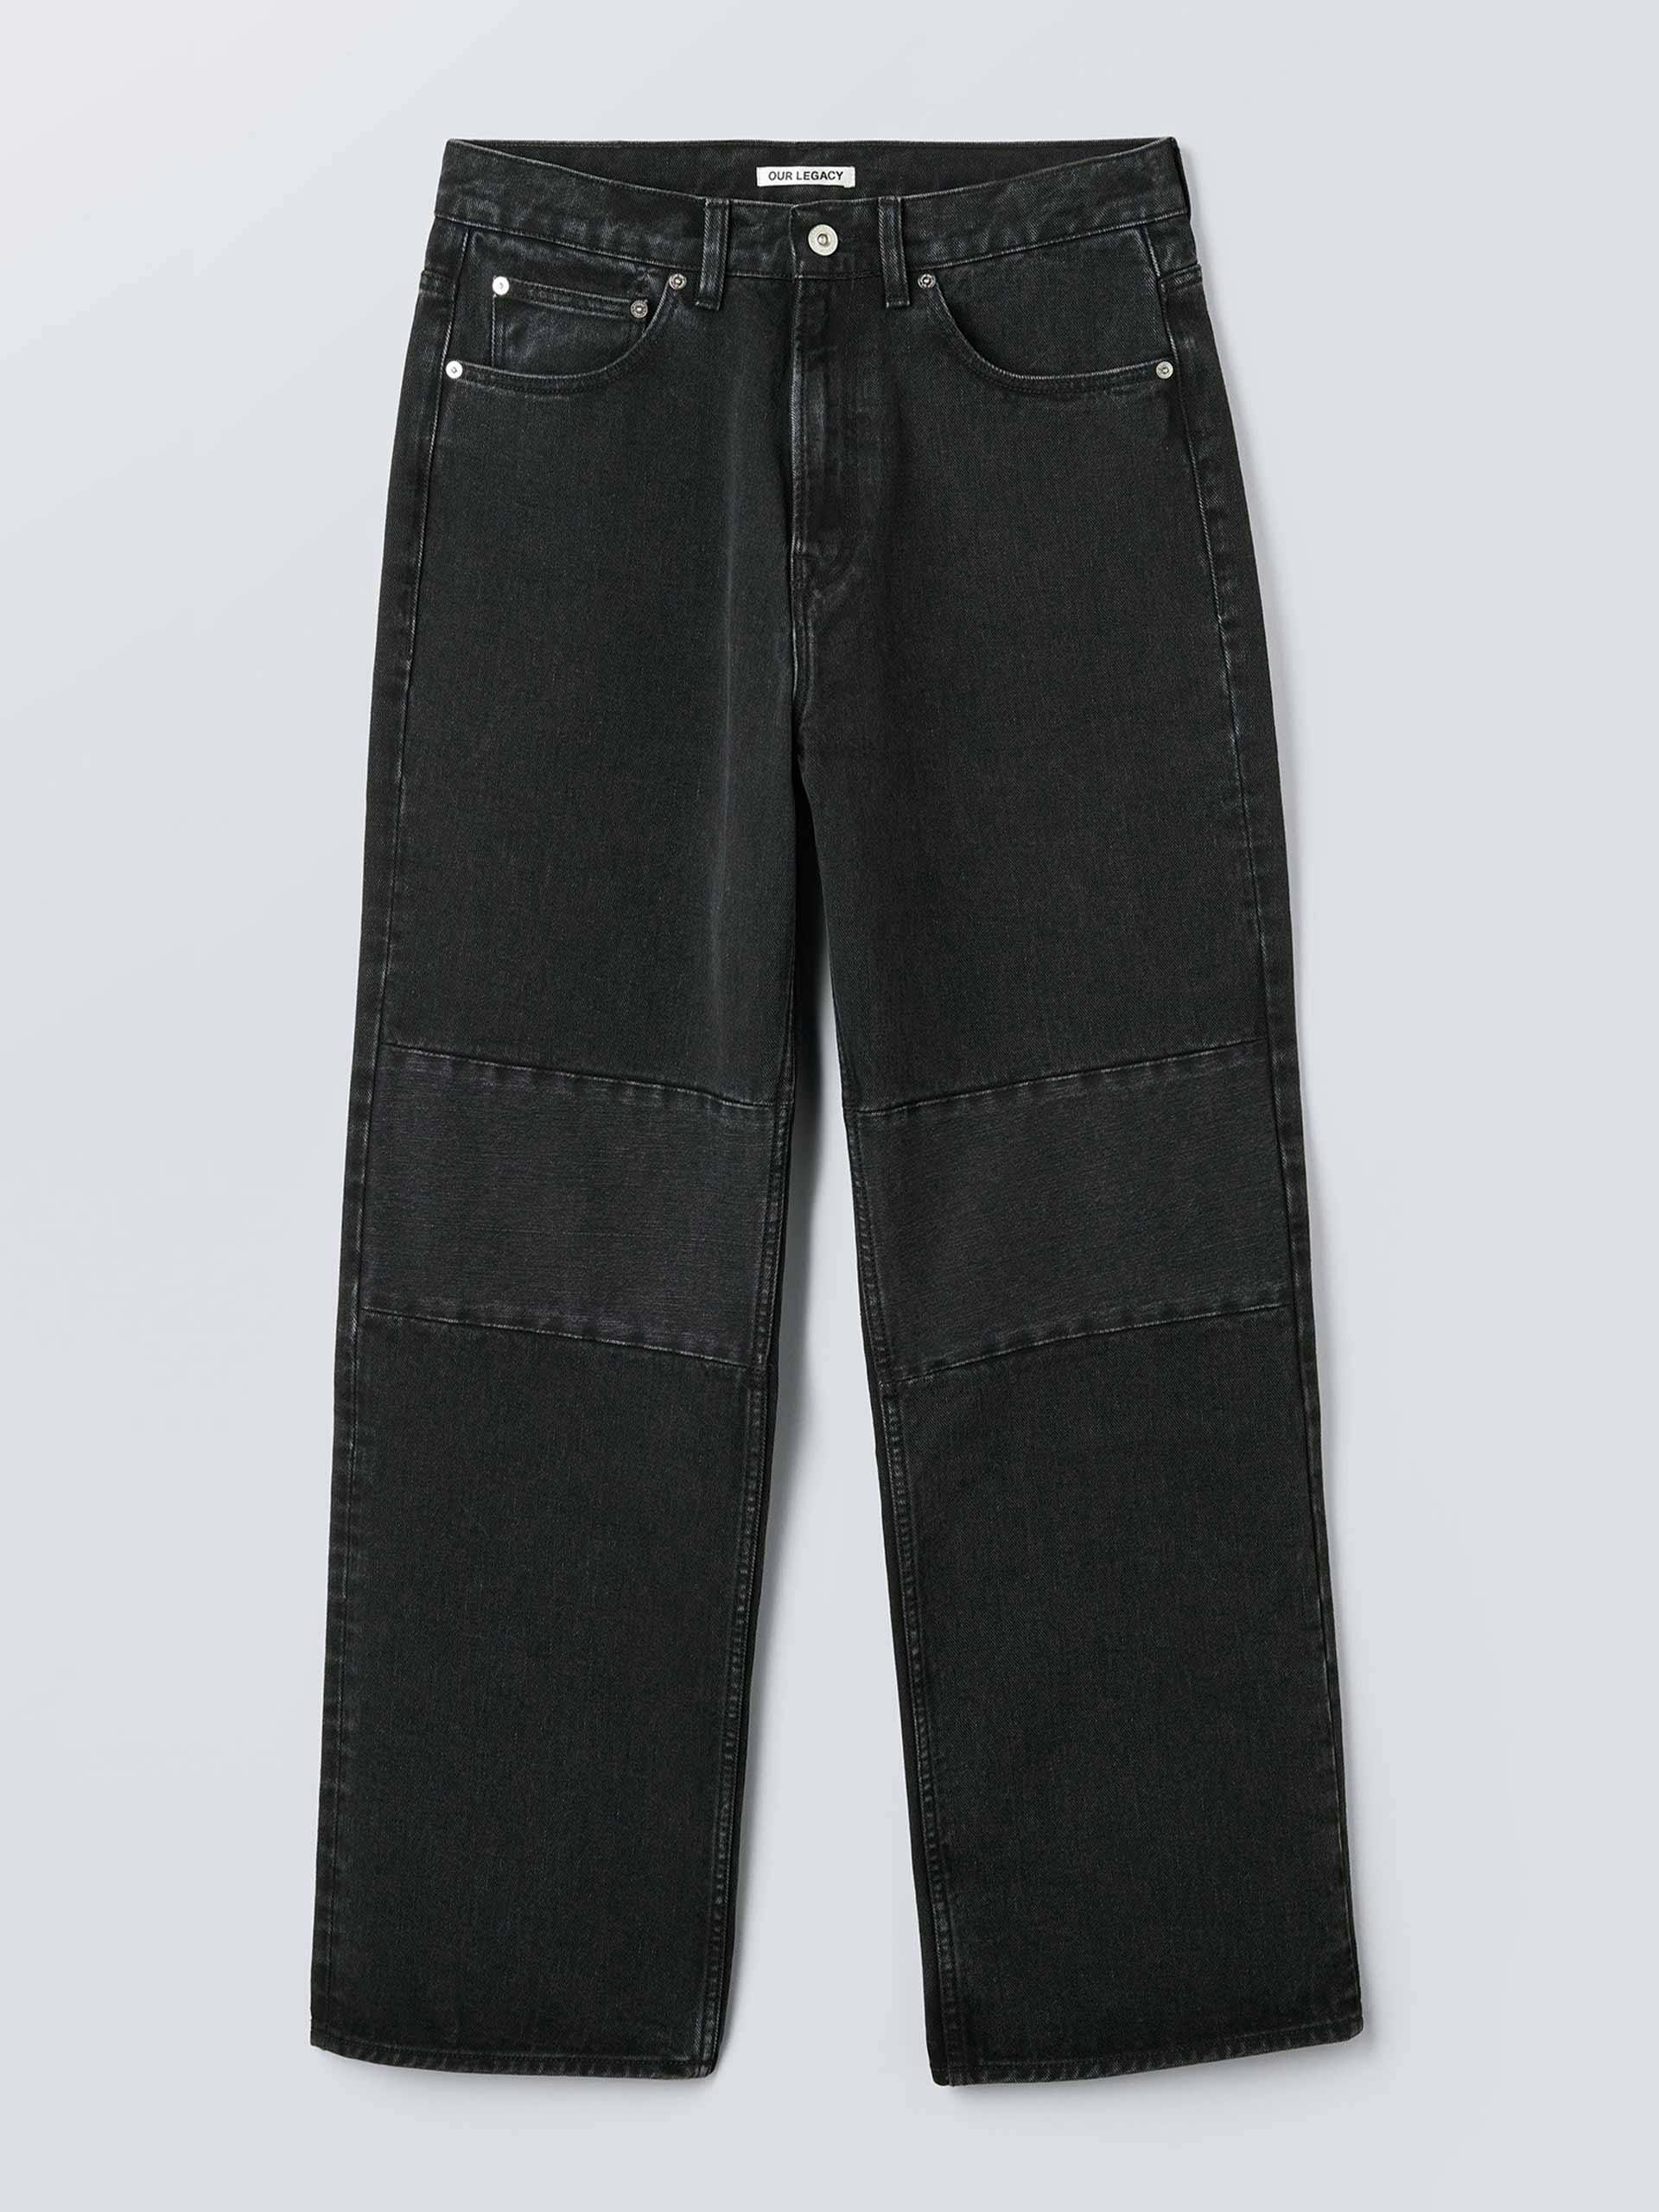 Washed black denim jeans